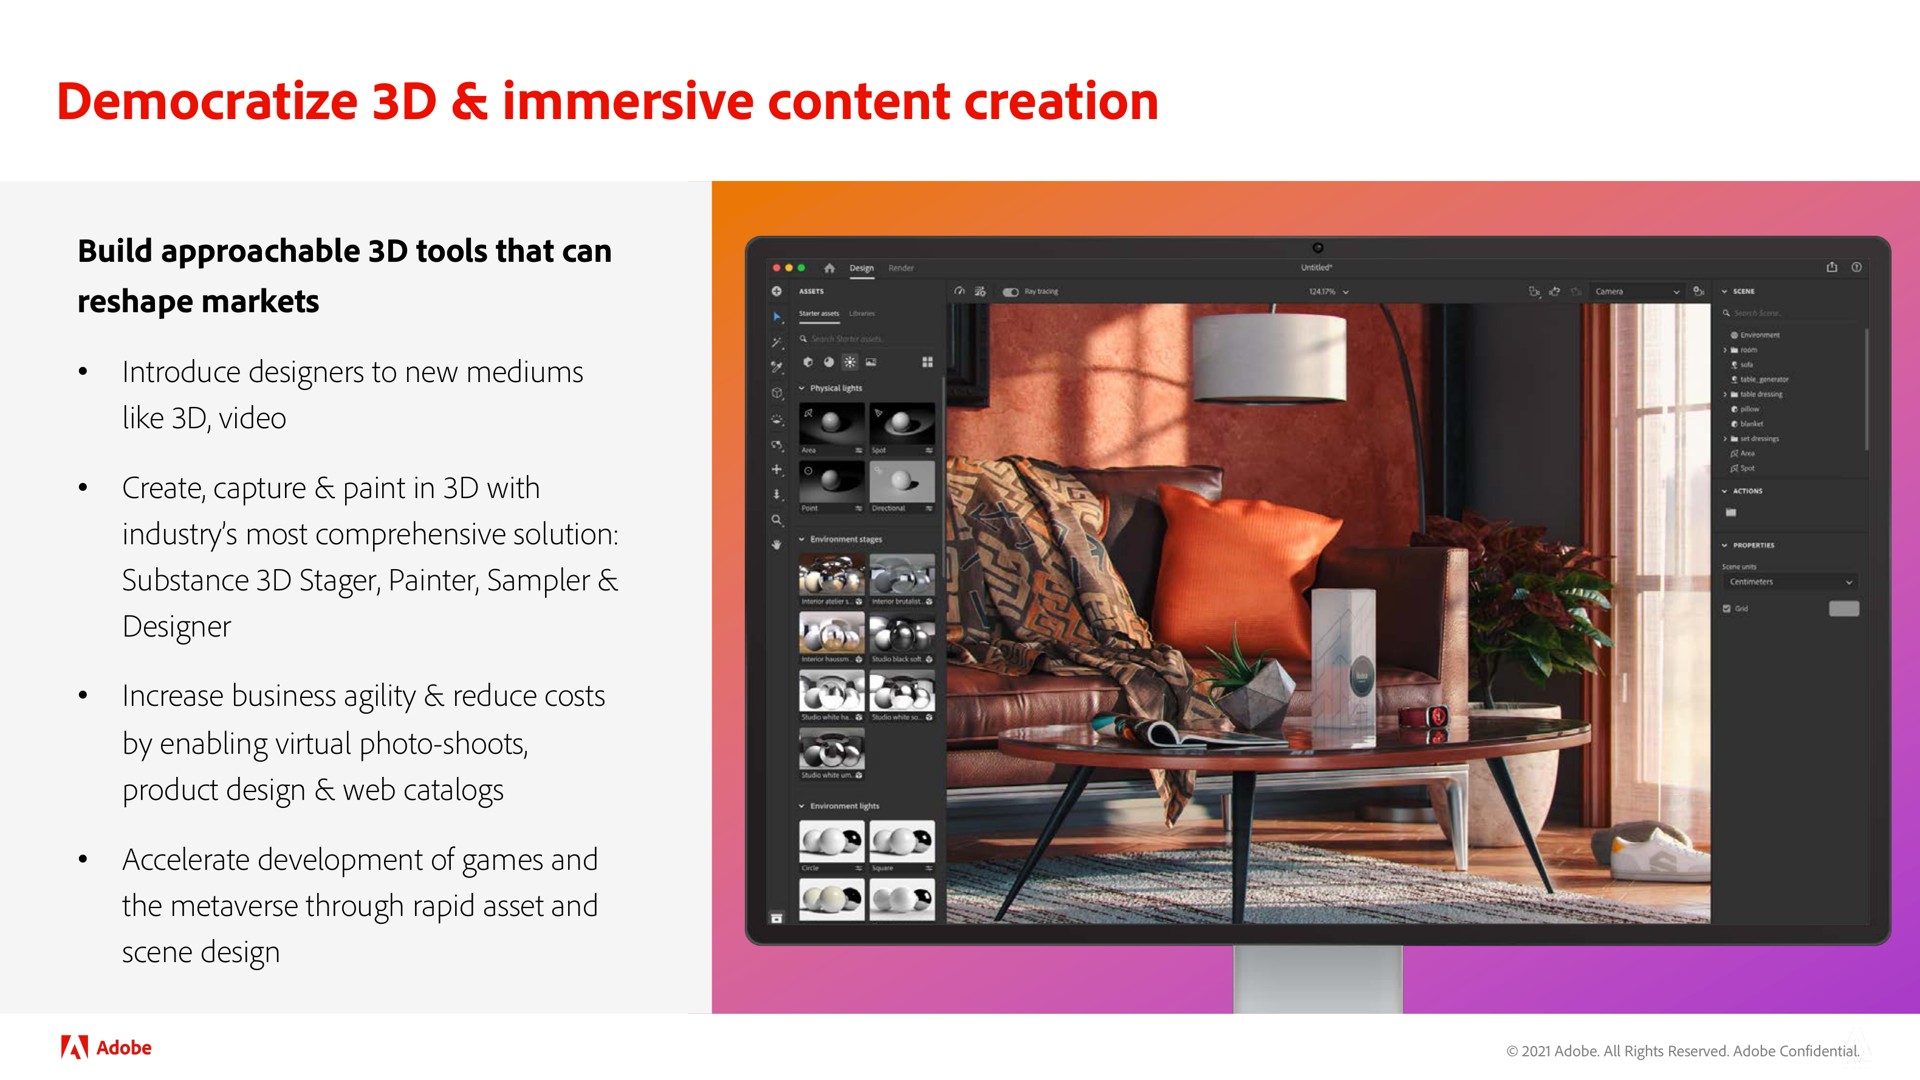 democratize immersive content creation | Adobe